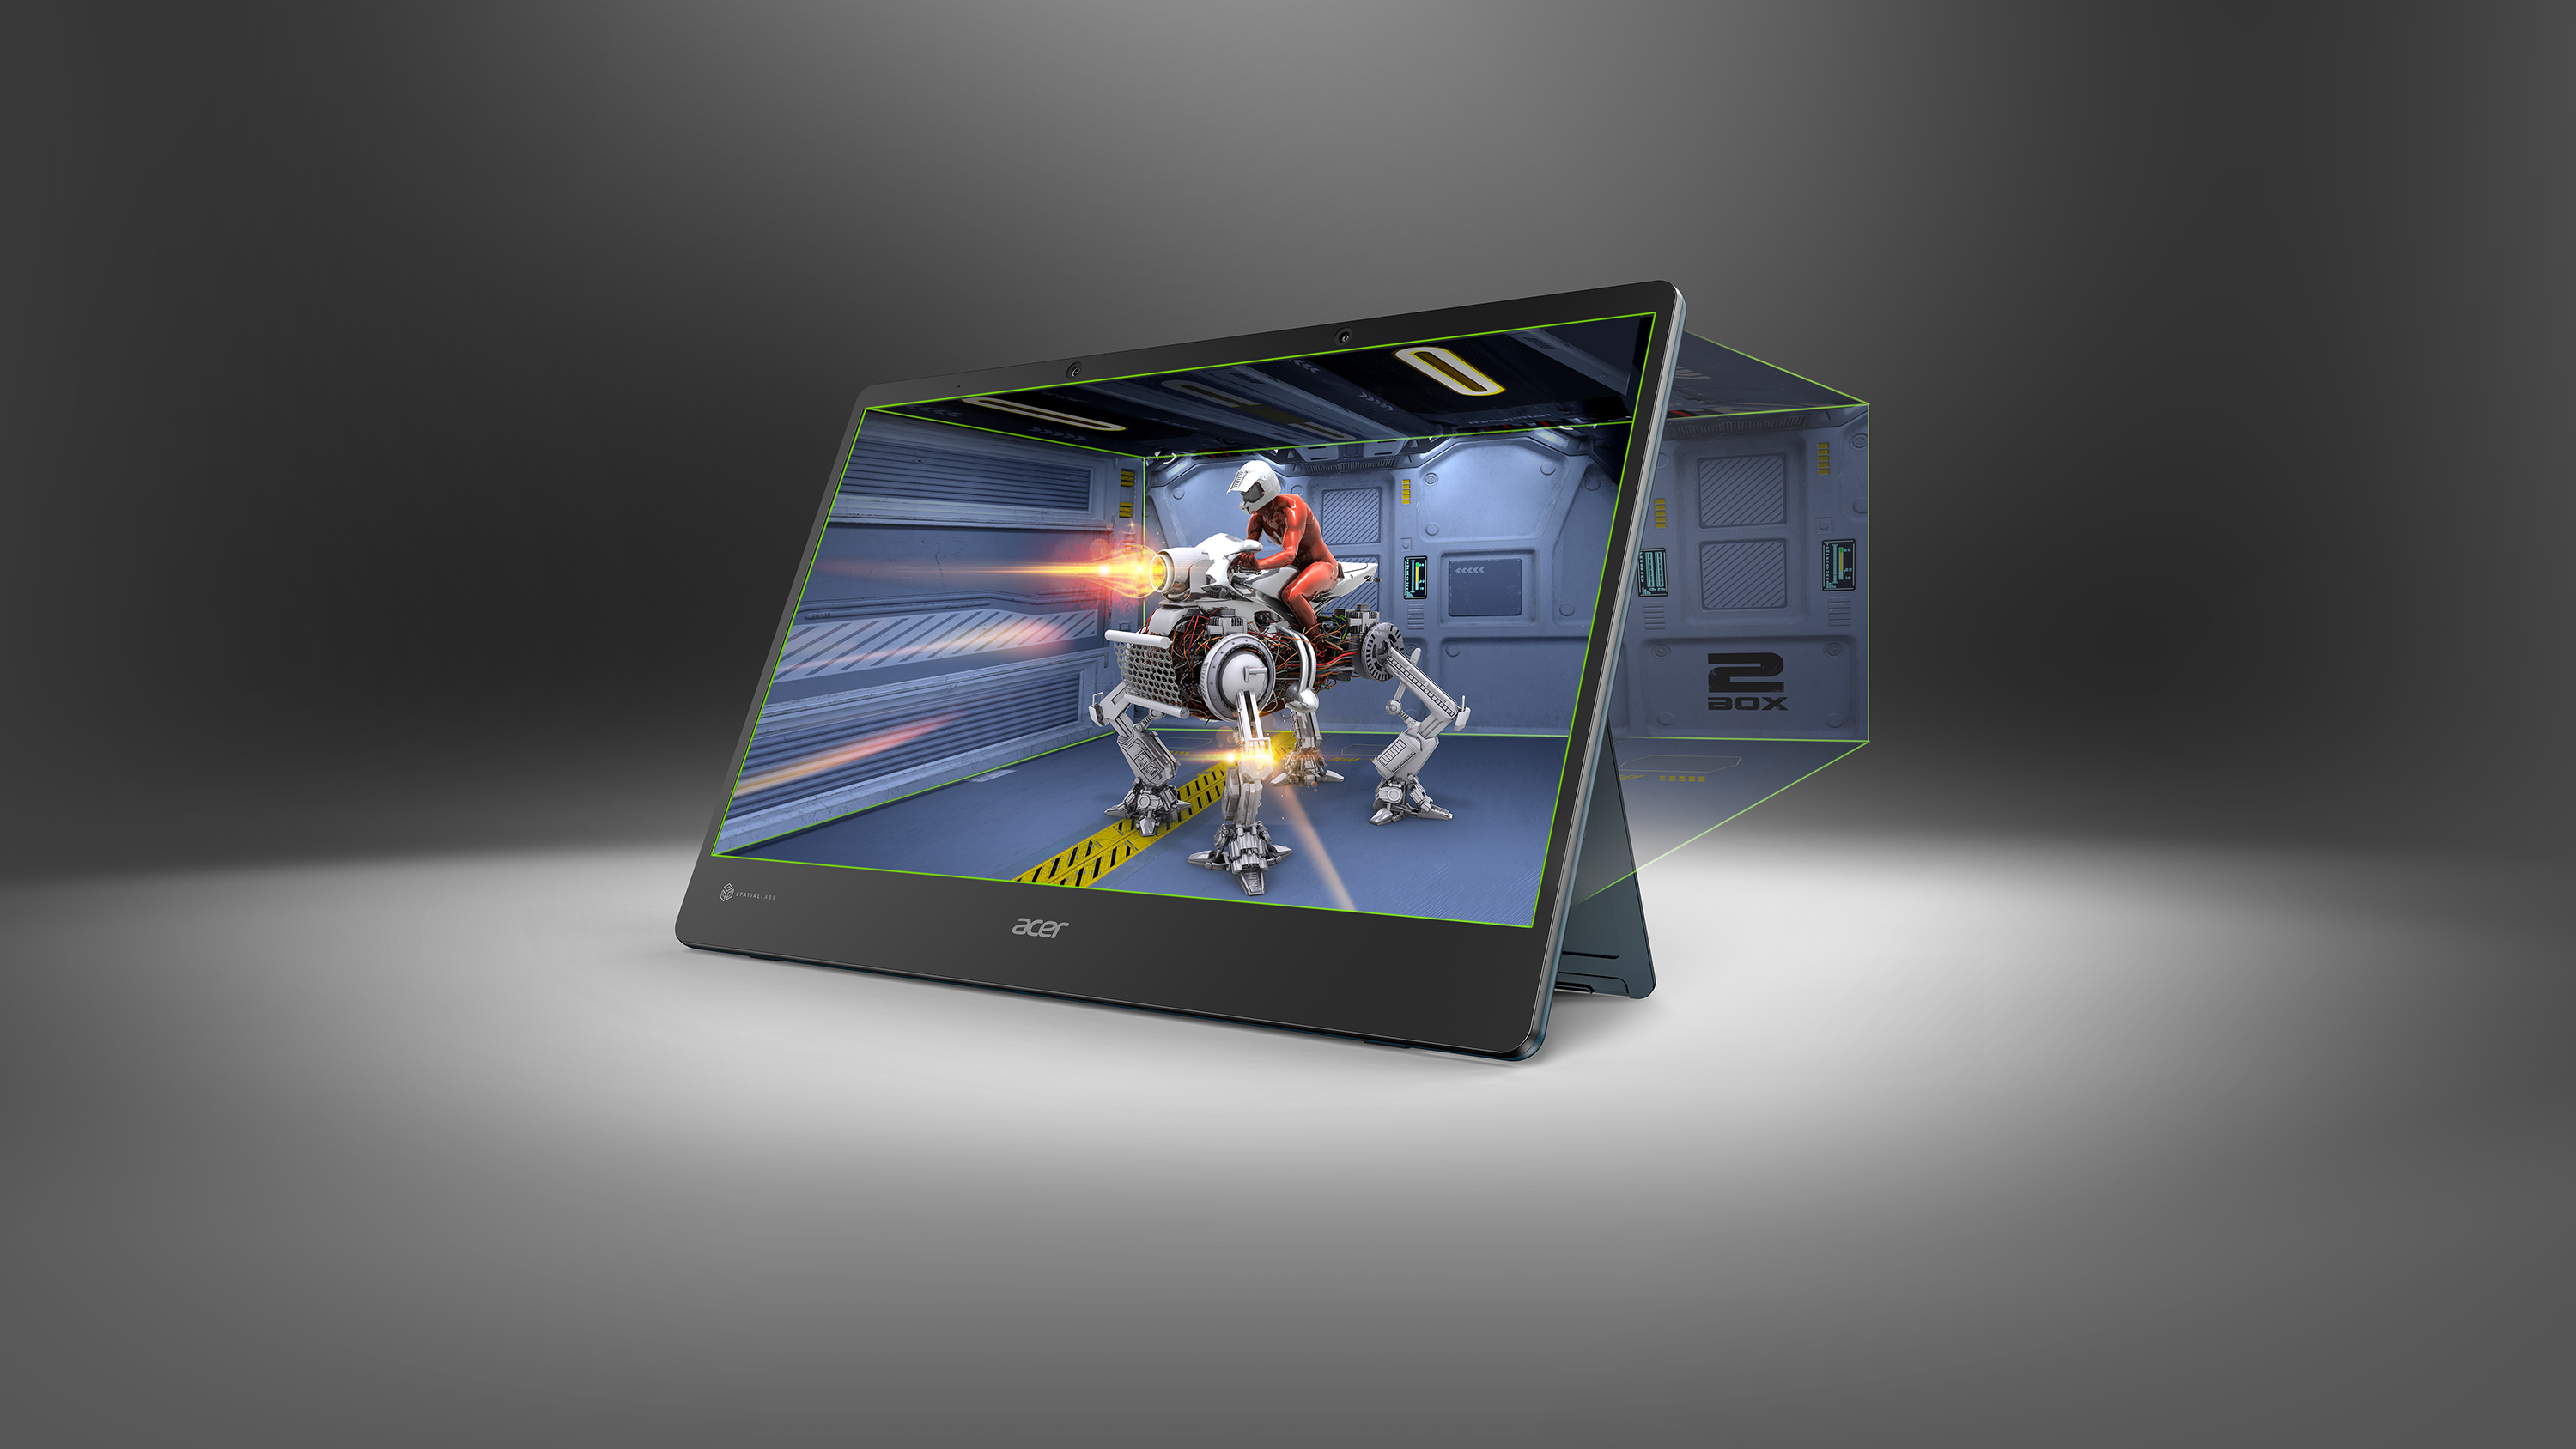 Acer Spatial Labs monitors 3D games